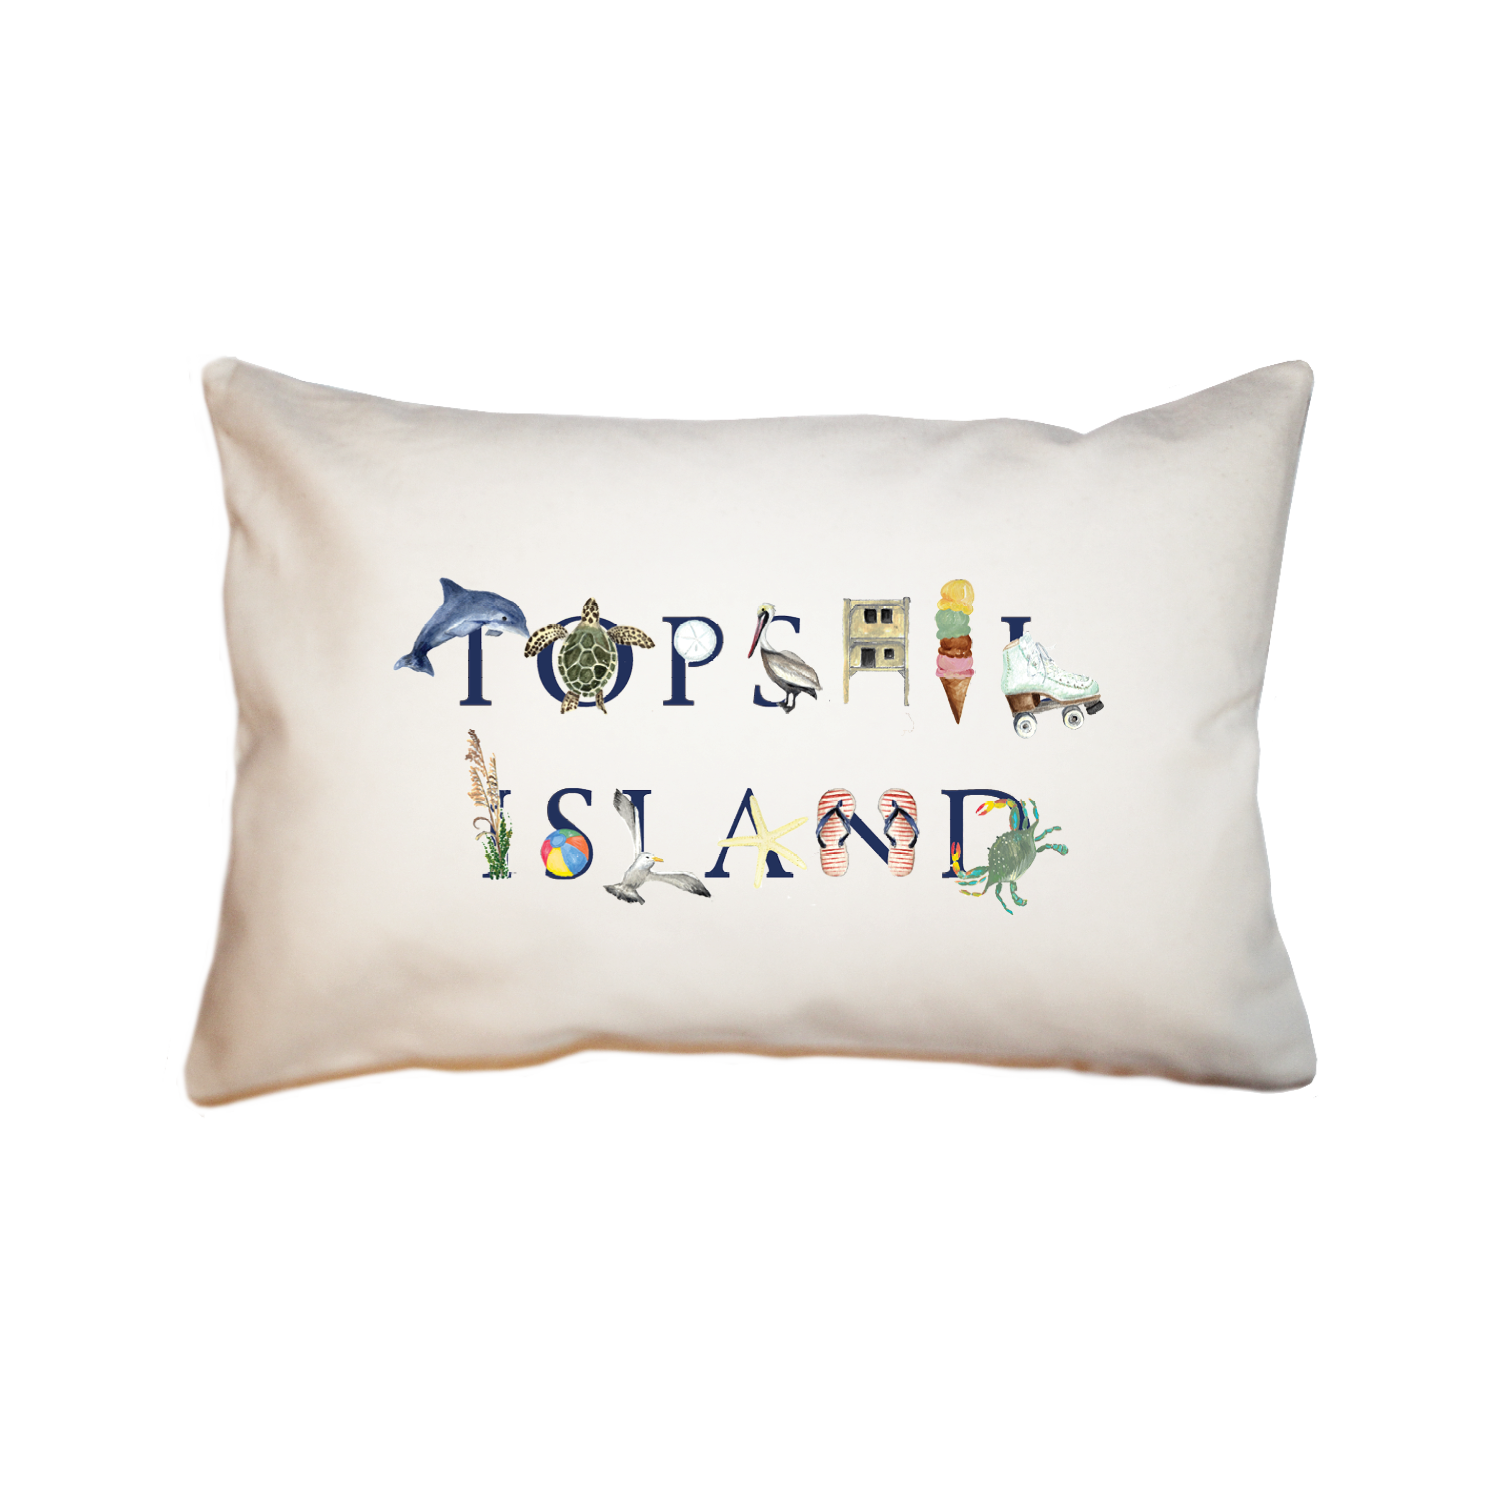 topsail large rectangle pillow